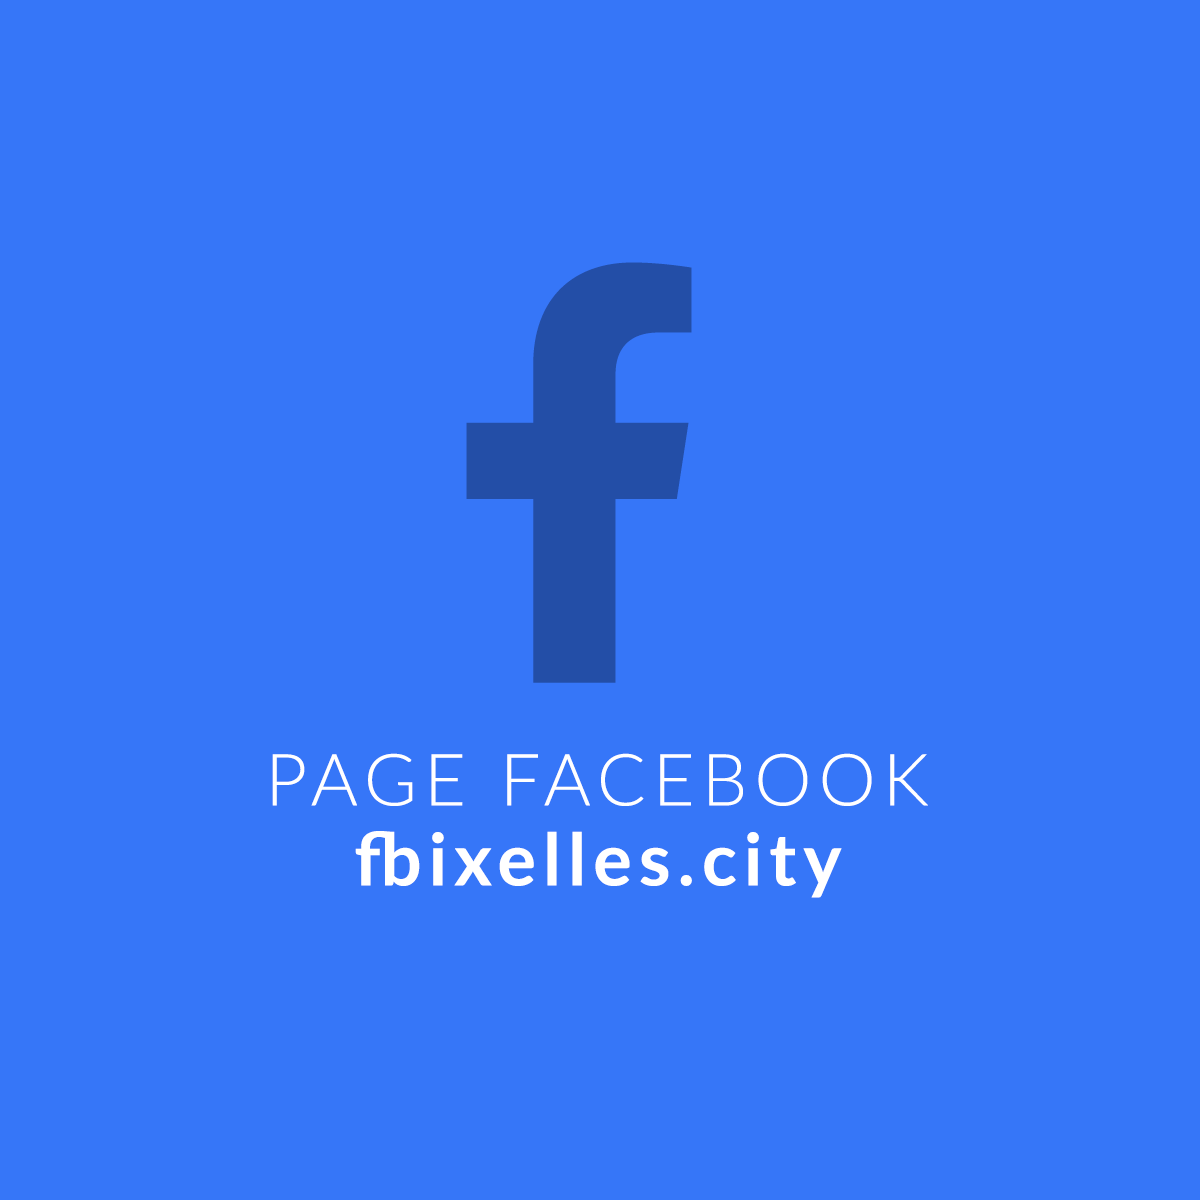 Facebook Ixelles.city